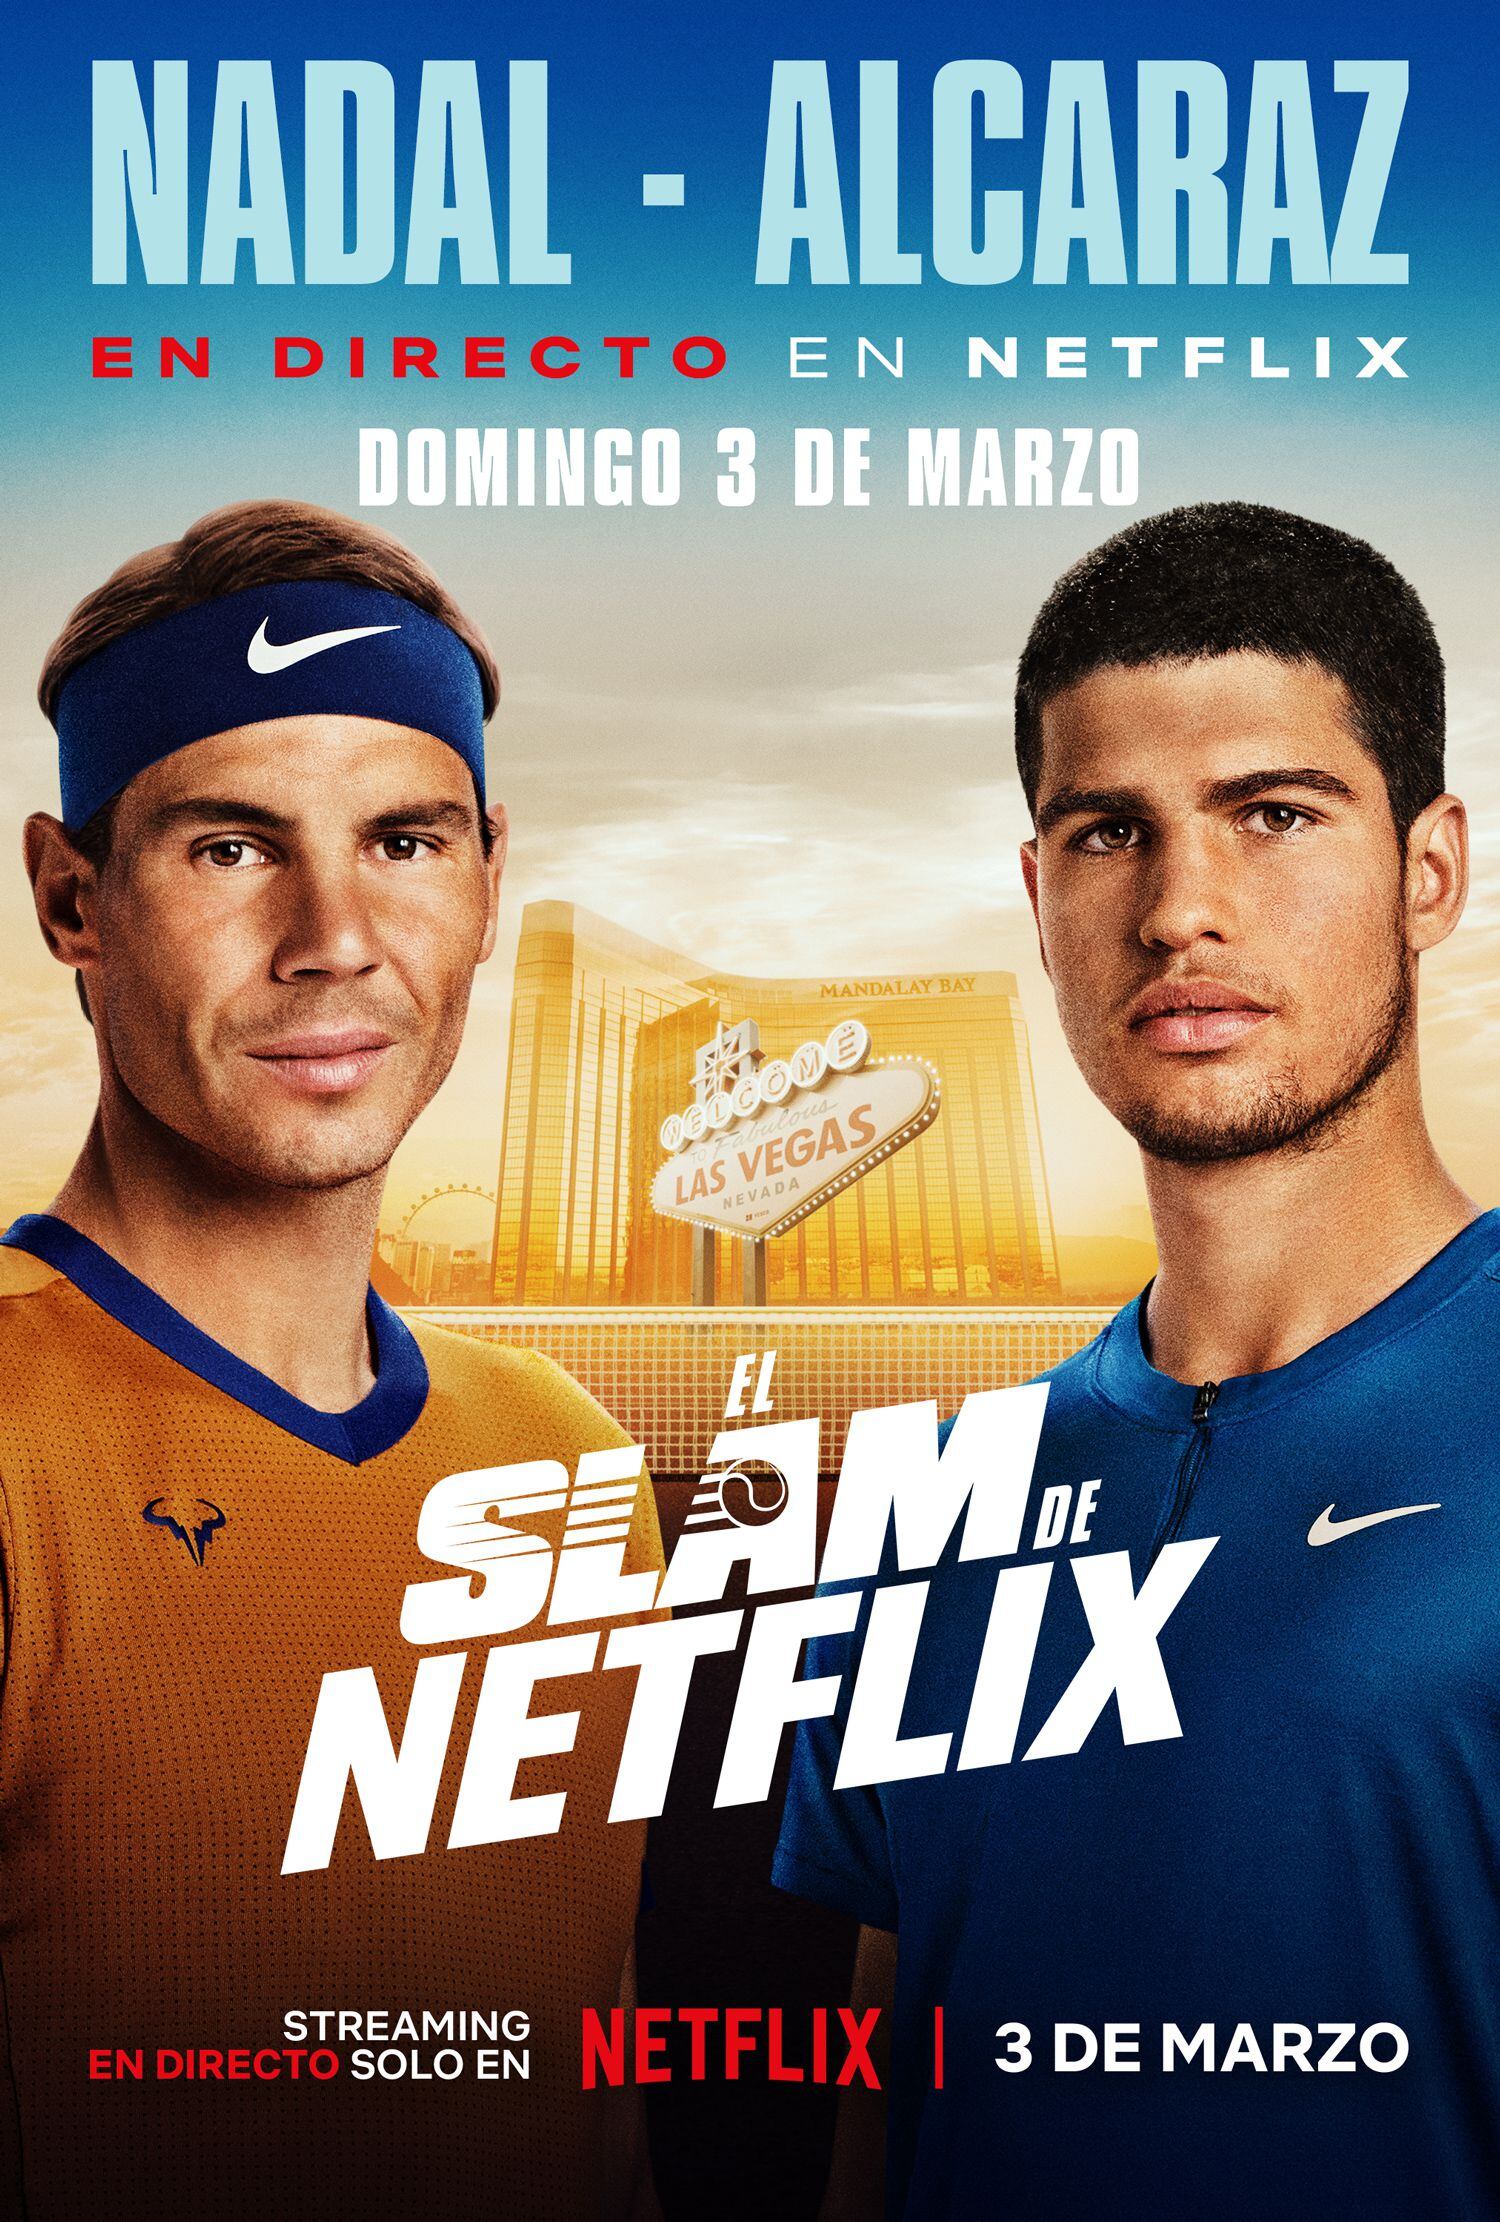 Cartel publicitario sobre el próximo partido de exhibición entre Rafa Nadal y Carlos Alcaraz en el mes de marzo en Las Vegas. (@NetflixES)